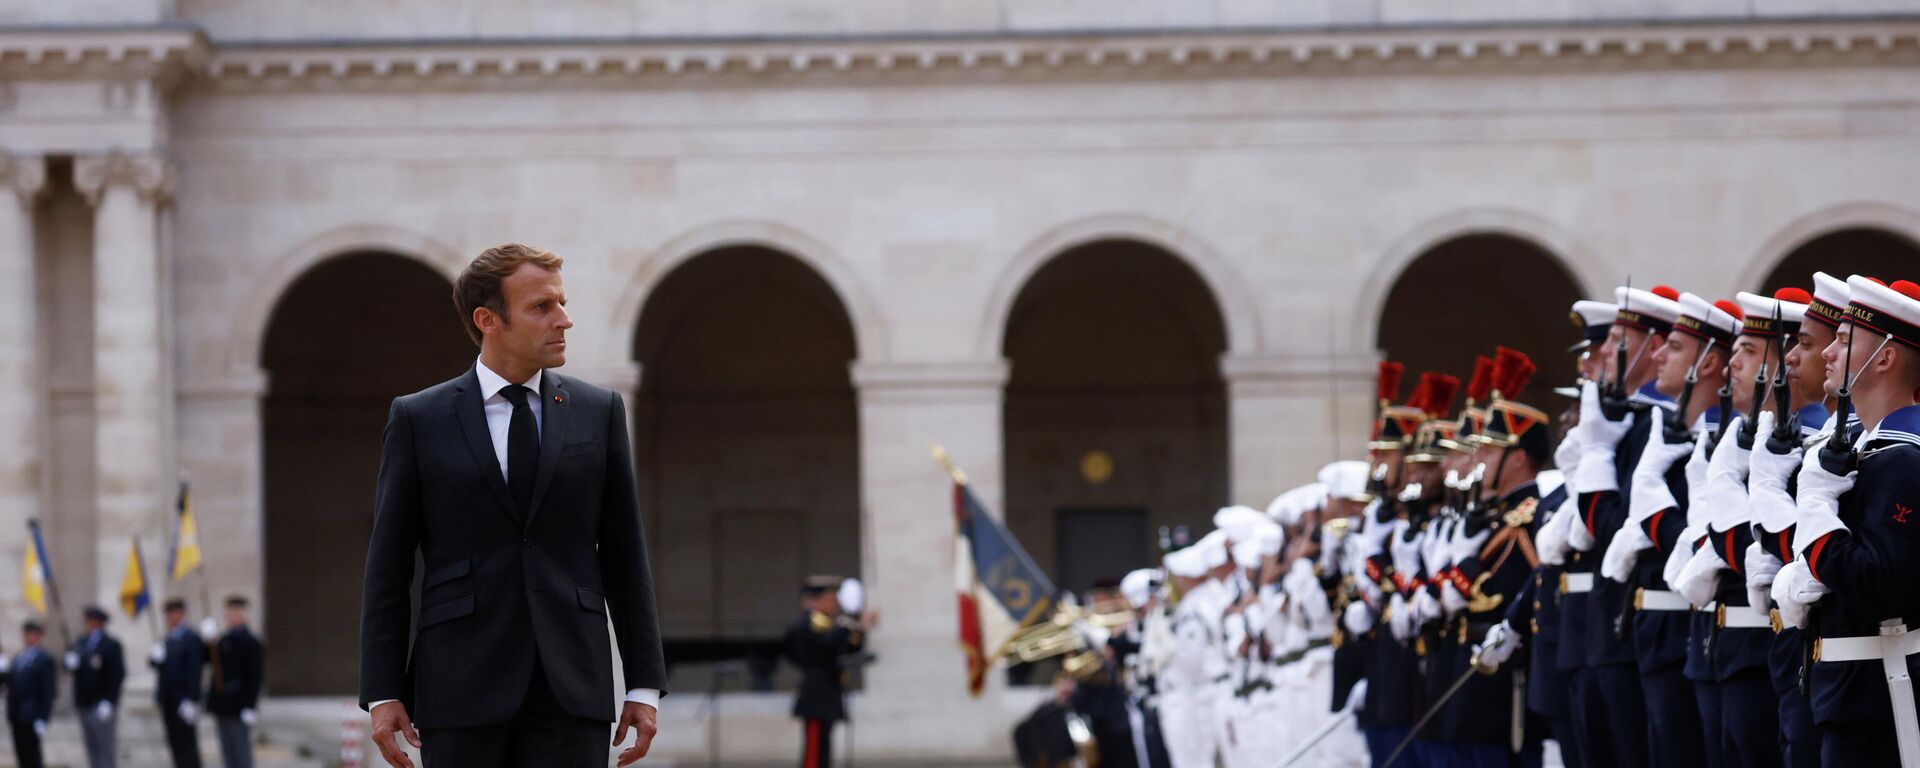 Emmanuel Macron, presidente de Francia, asiste a una parada militar en París, el 29 de septiembre del 2021 - Sputnik Mundo, 1920, 29.09.2021